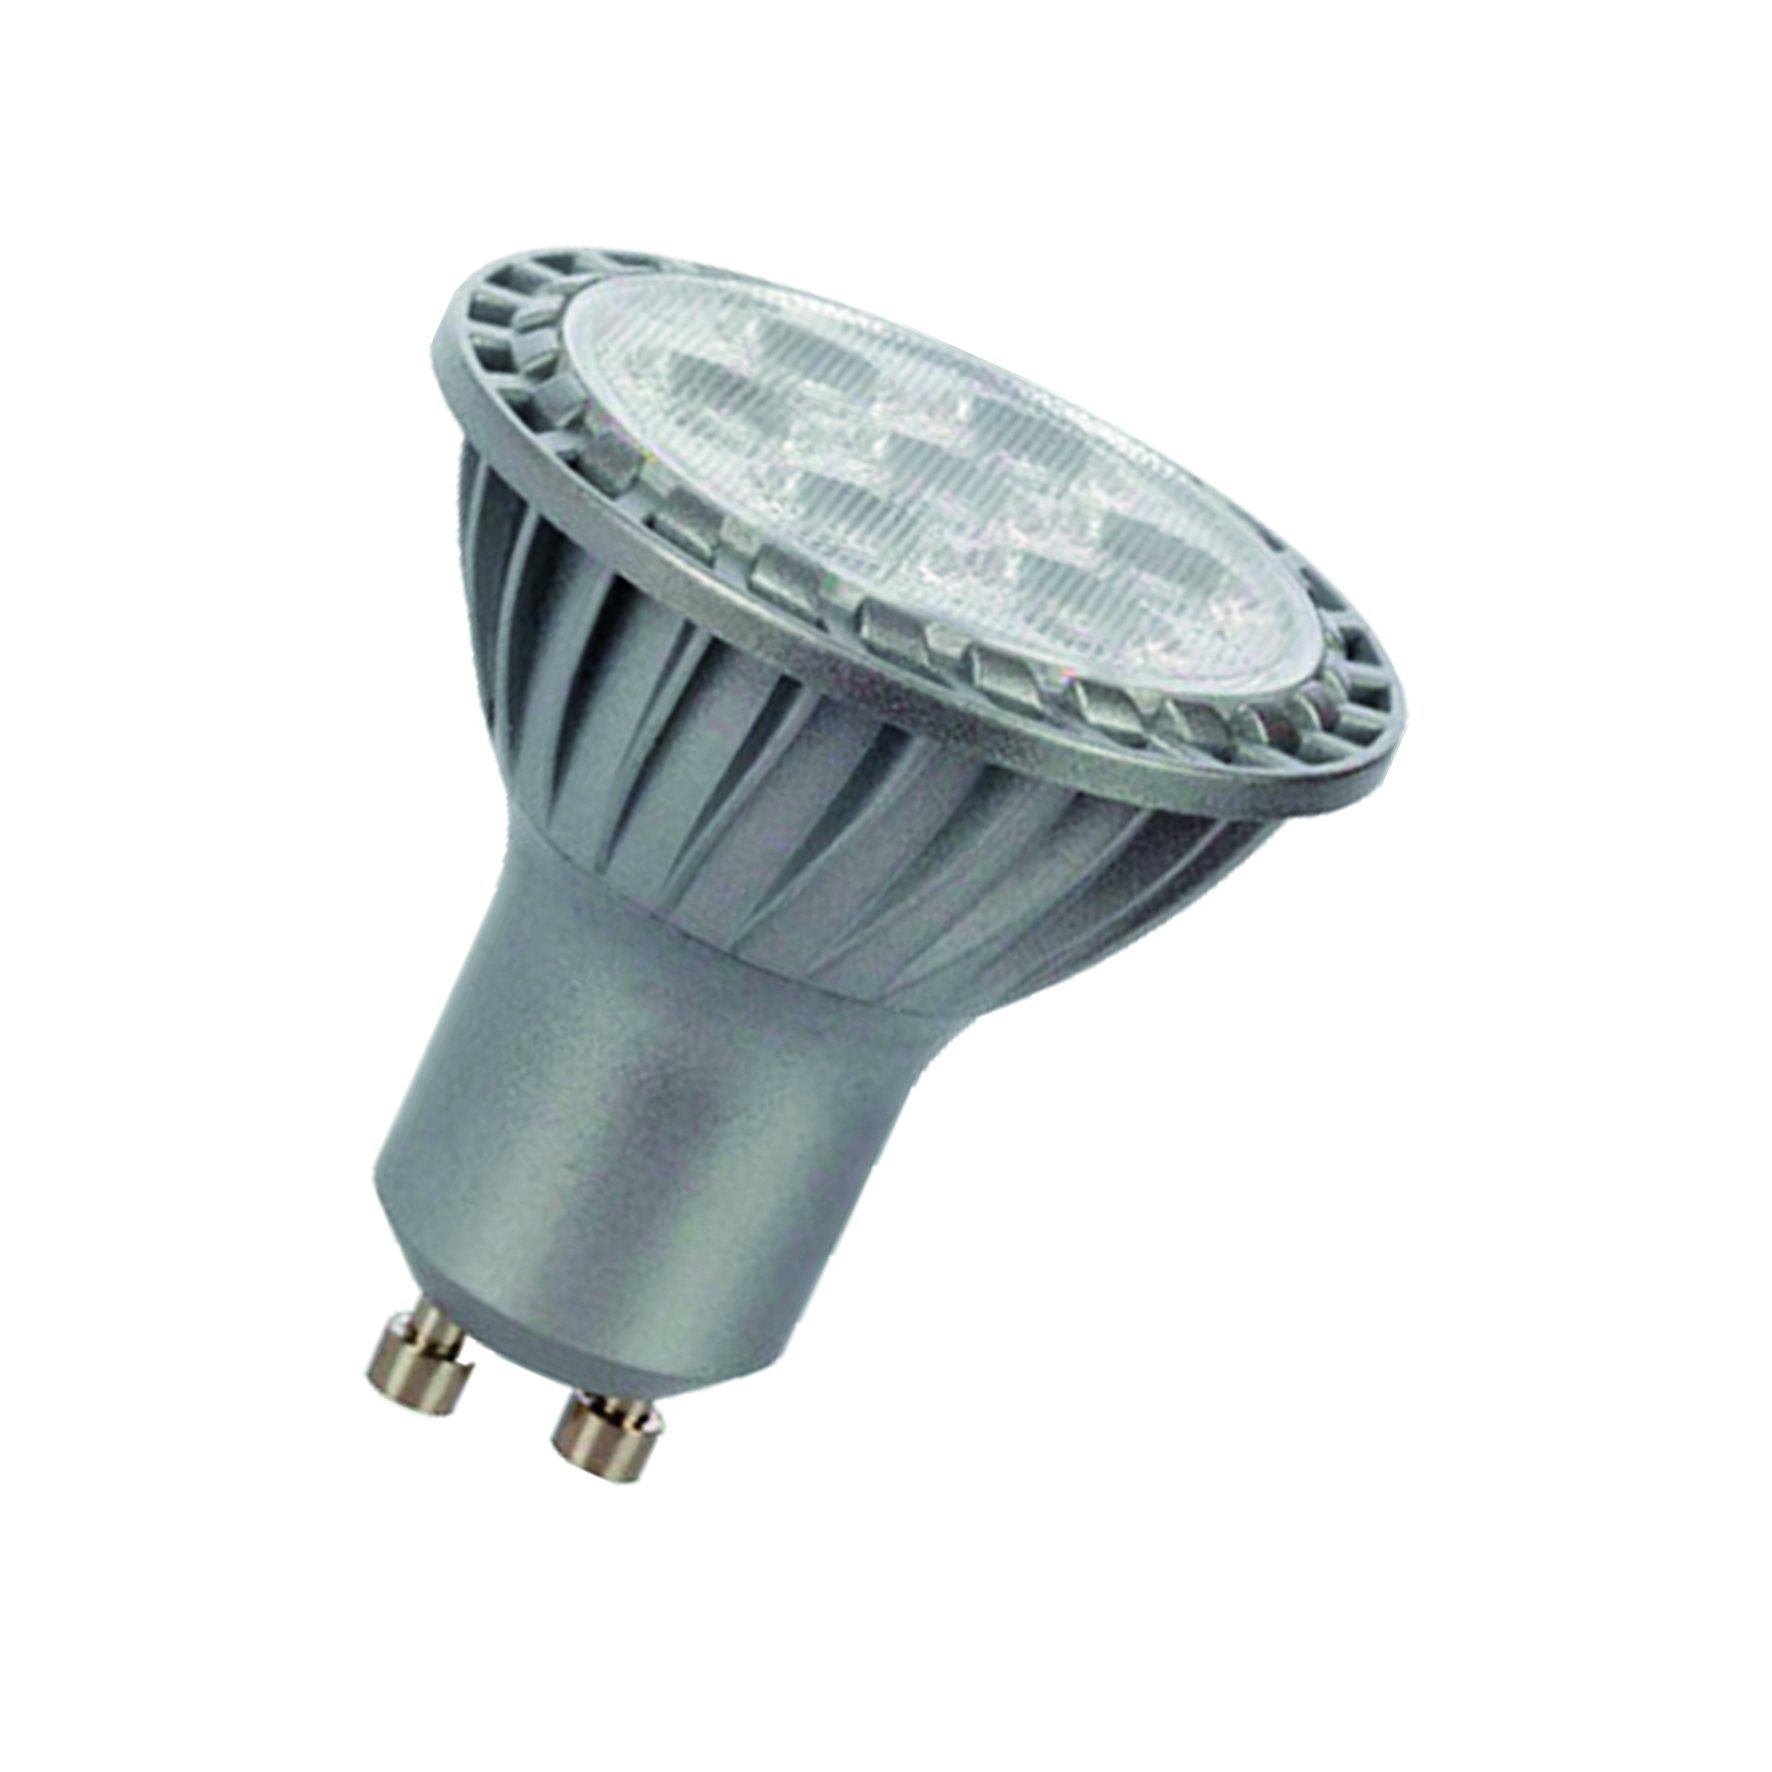 LED GU10 PAR16 240V 5.5W/840 35D Dimmable